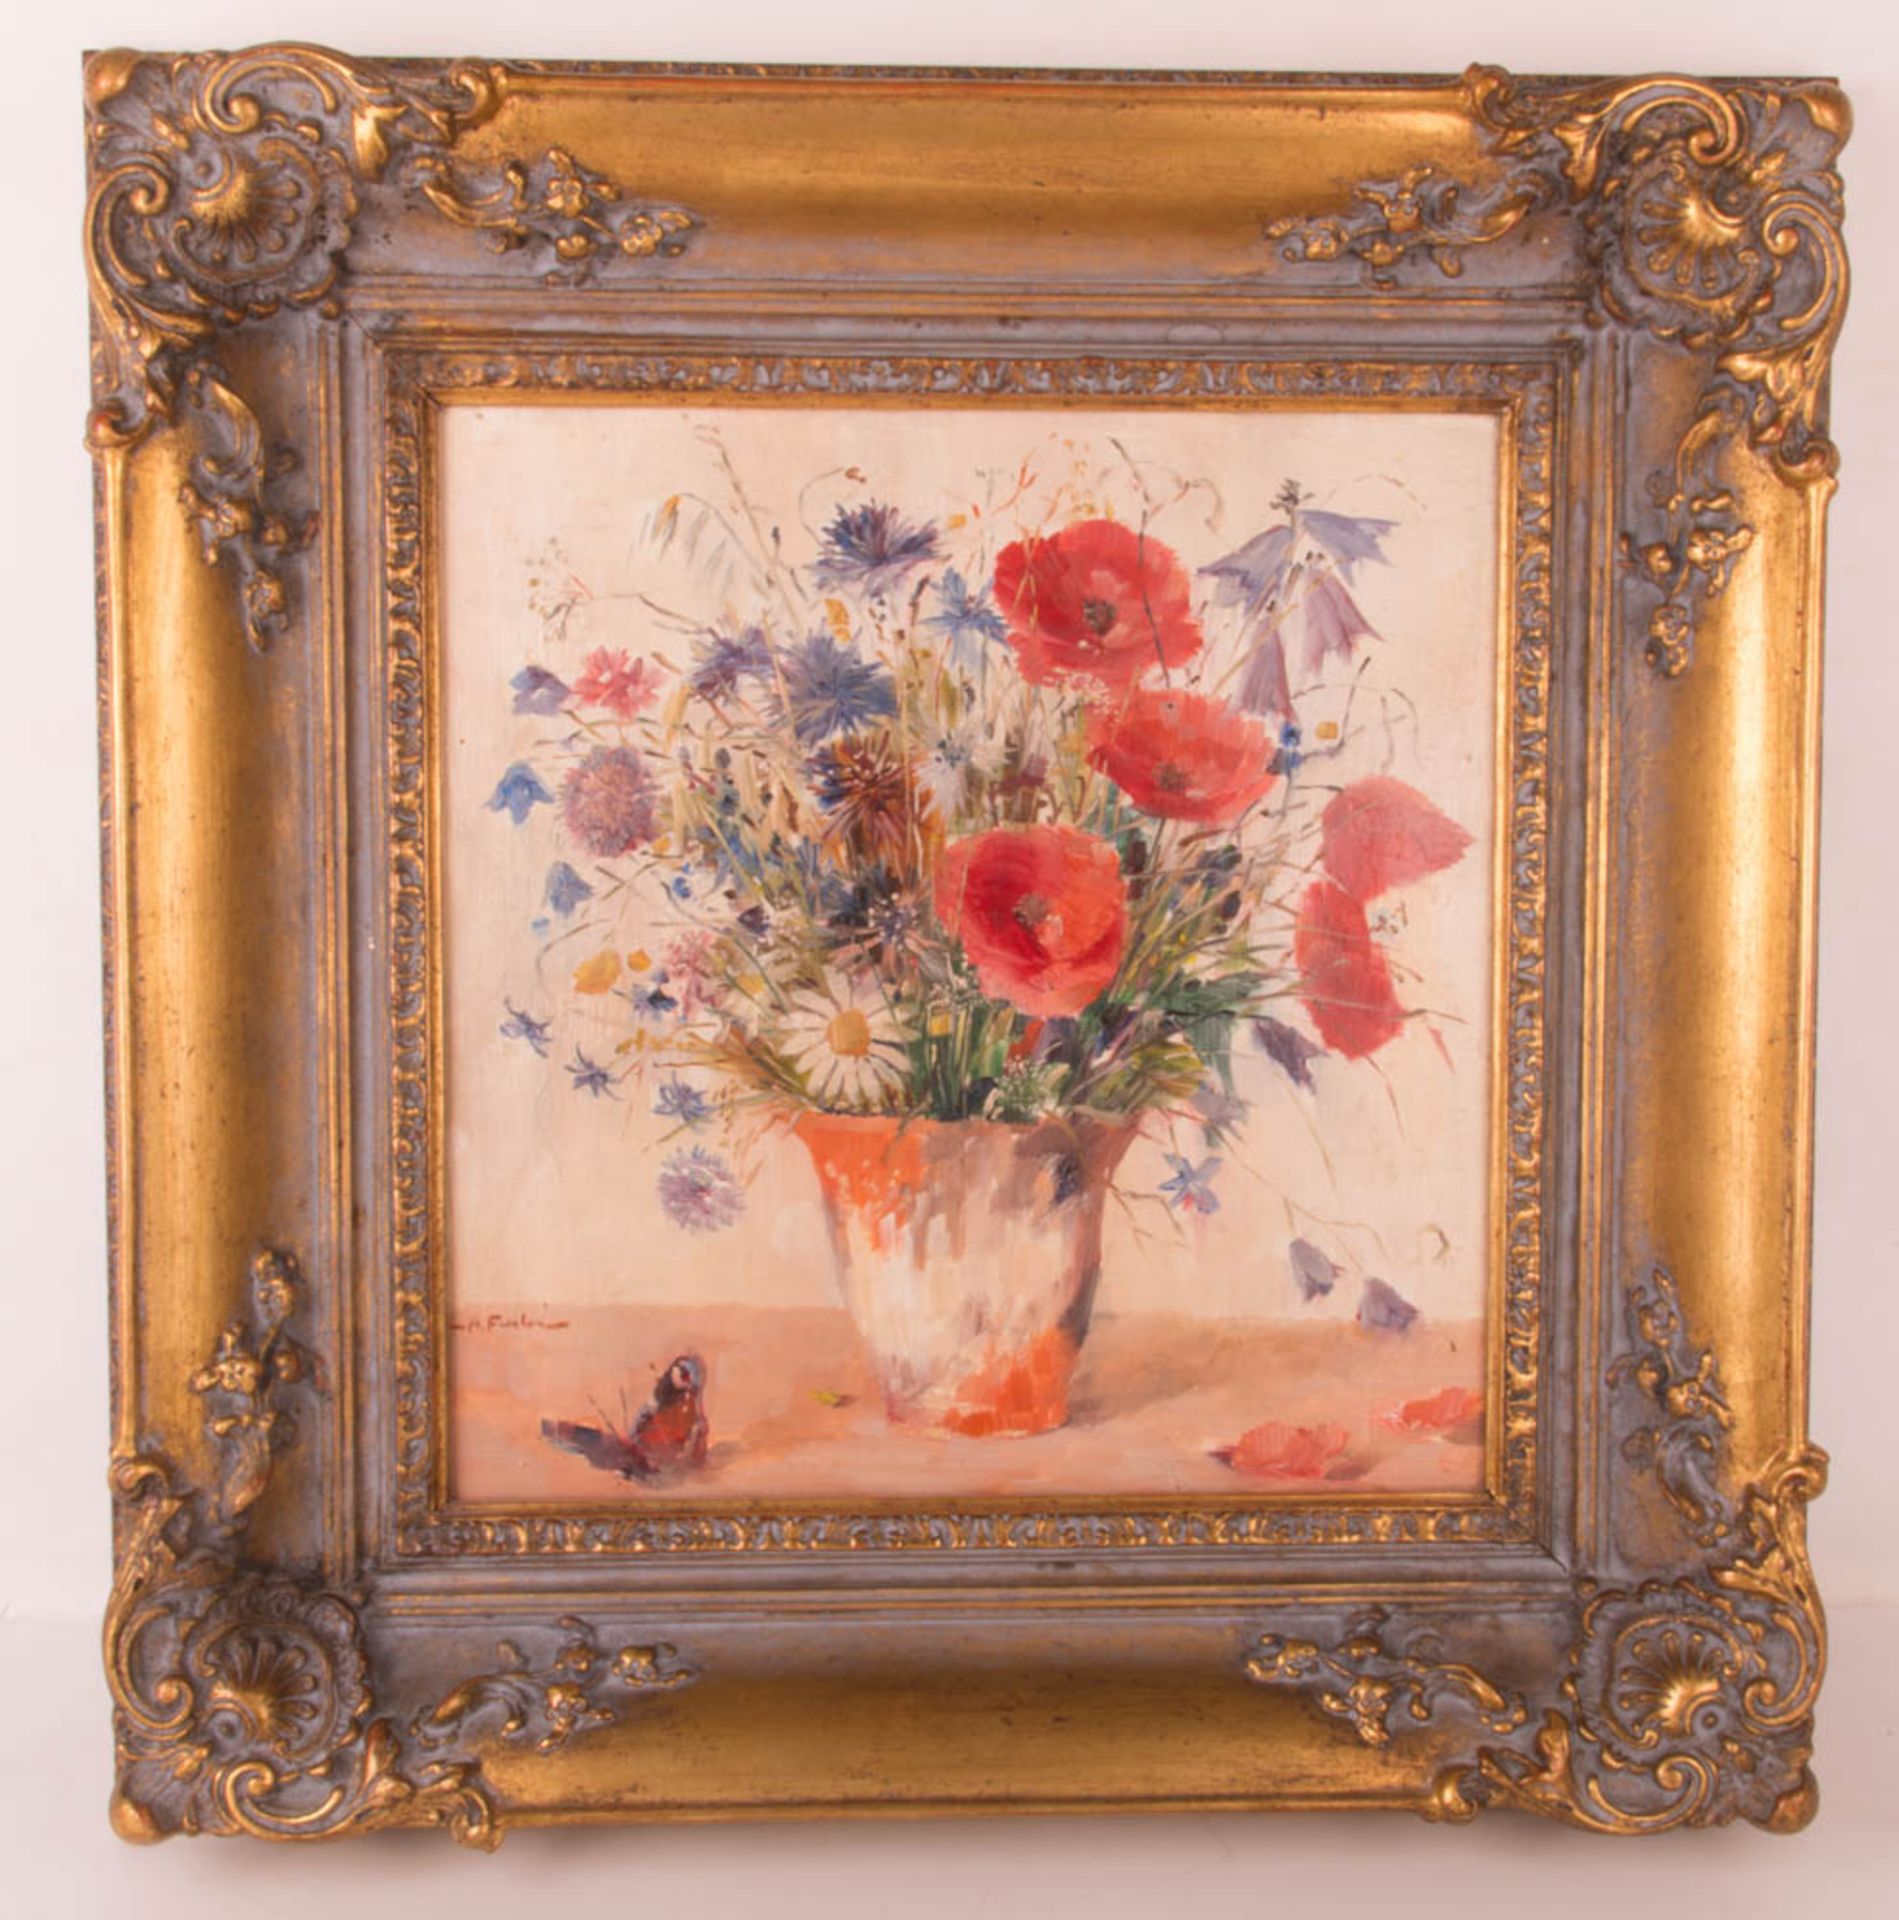 Unbekannt, Neoimpressionistisches Blumenstillleben, Öl auf Leinwand, 20. Jhd. - Bild 2 aus 7